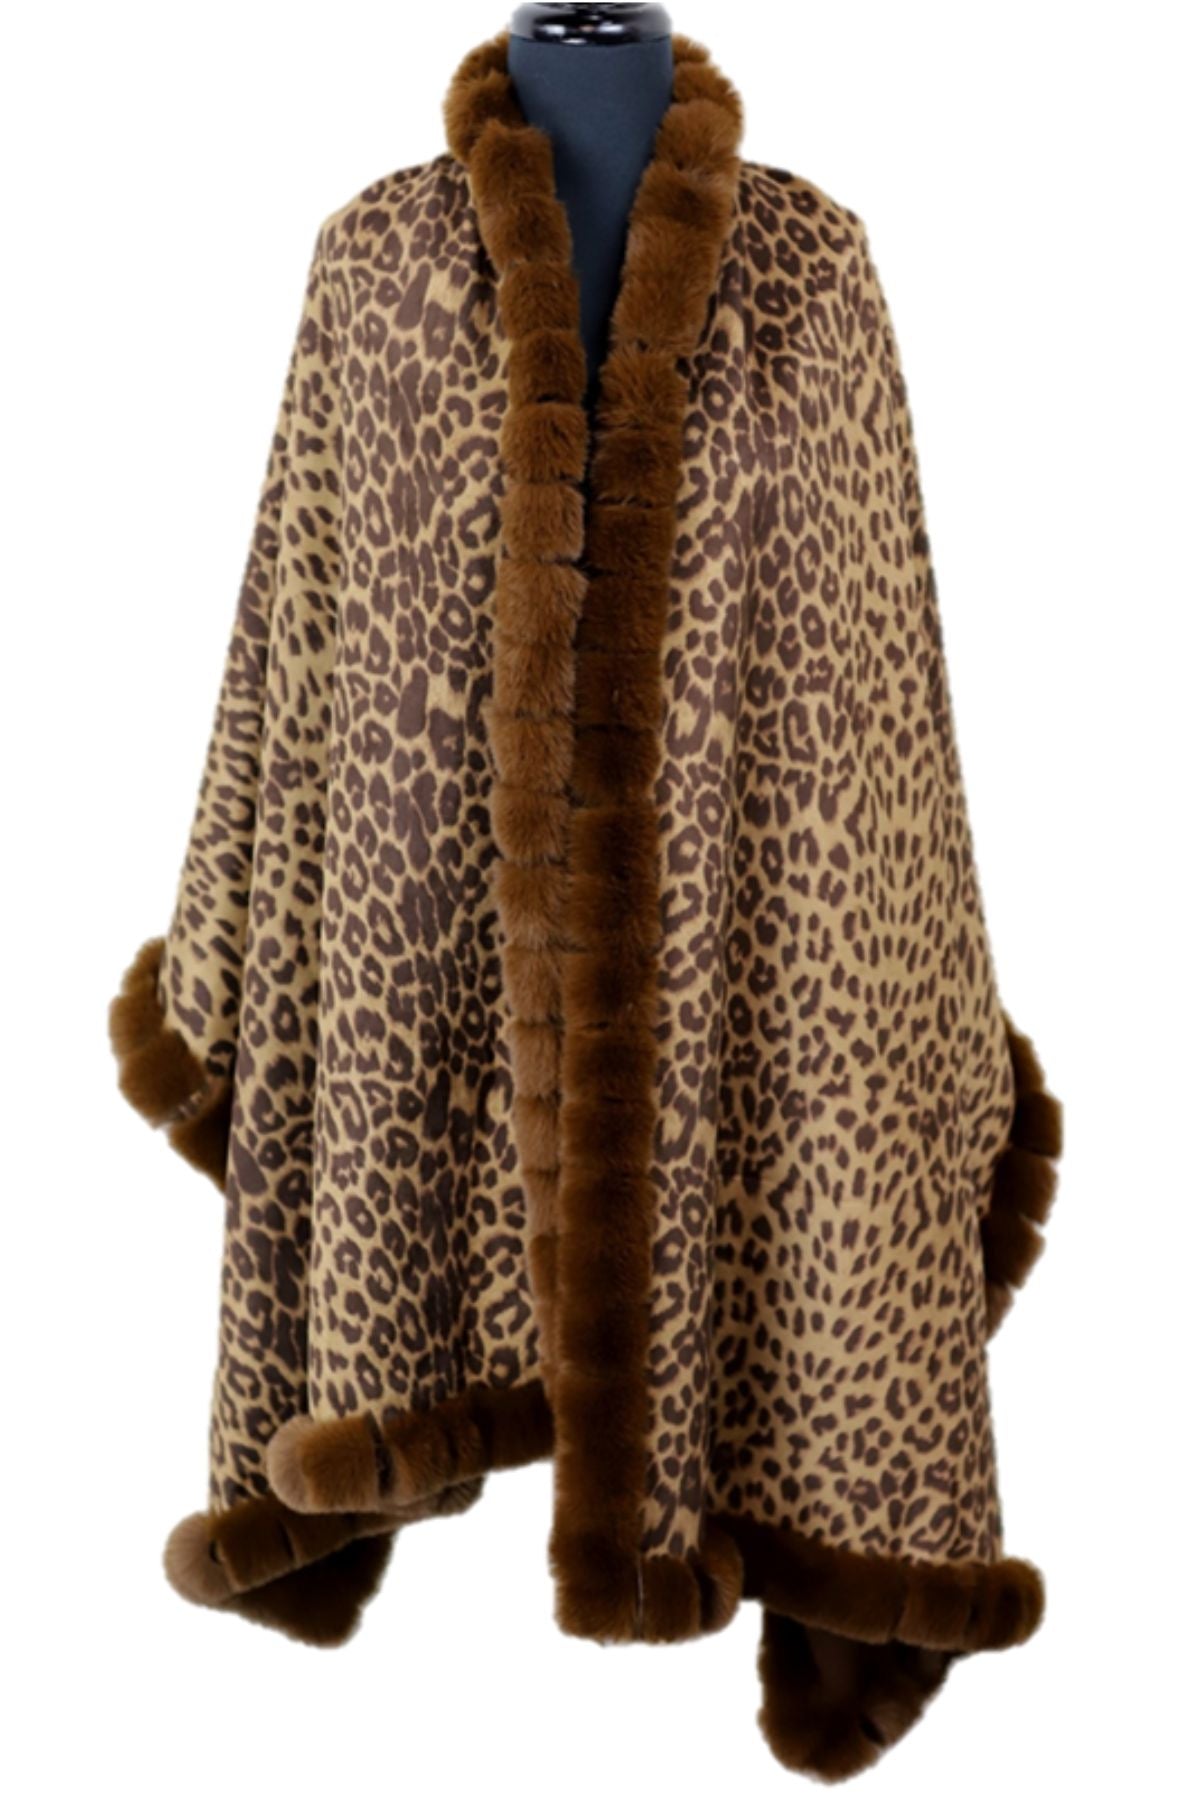 Leopard wrap with faux fur trim